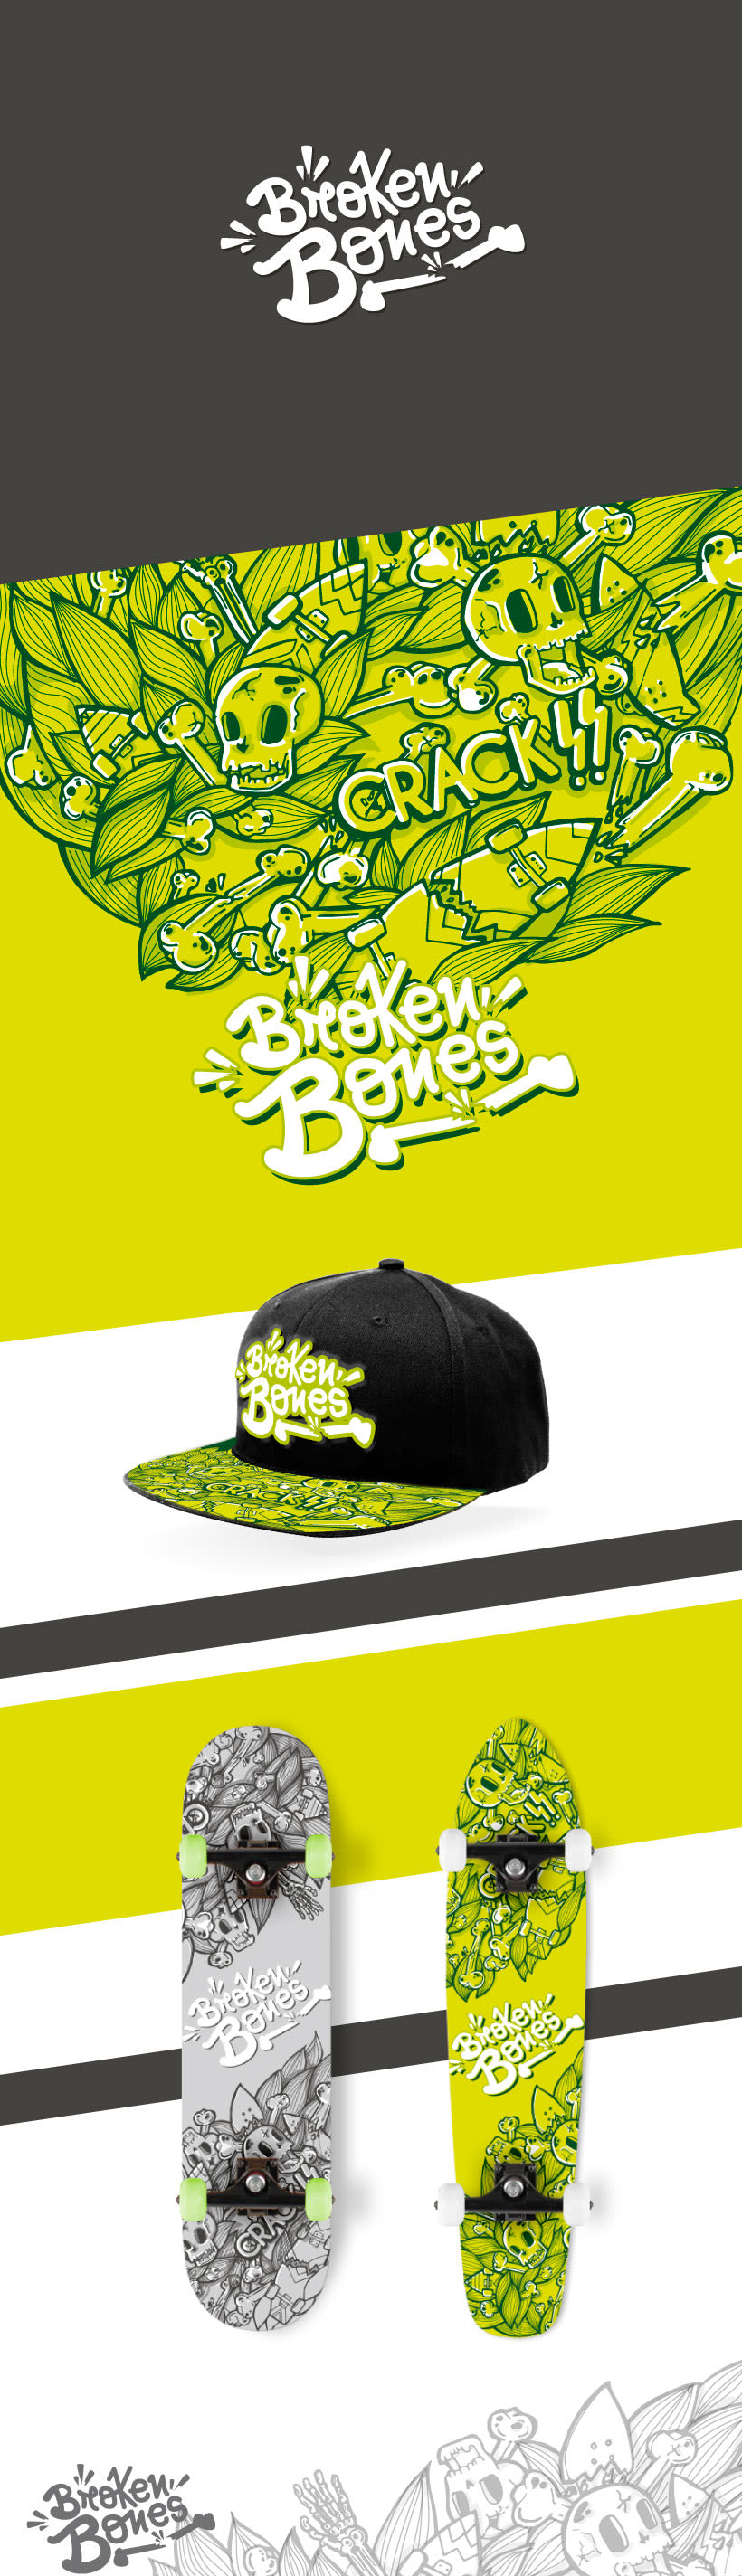 Broken Bones - Urban Brand 0